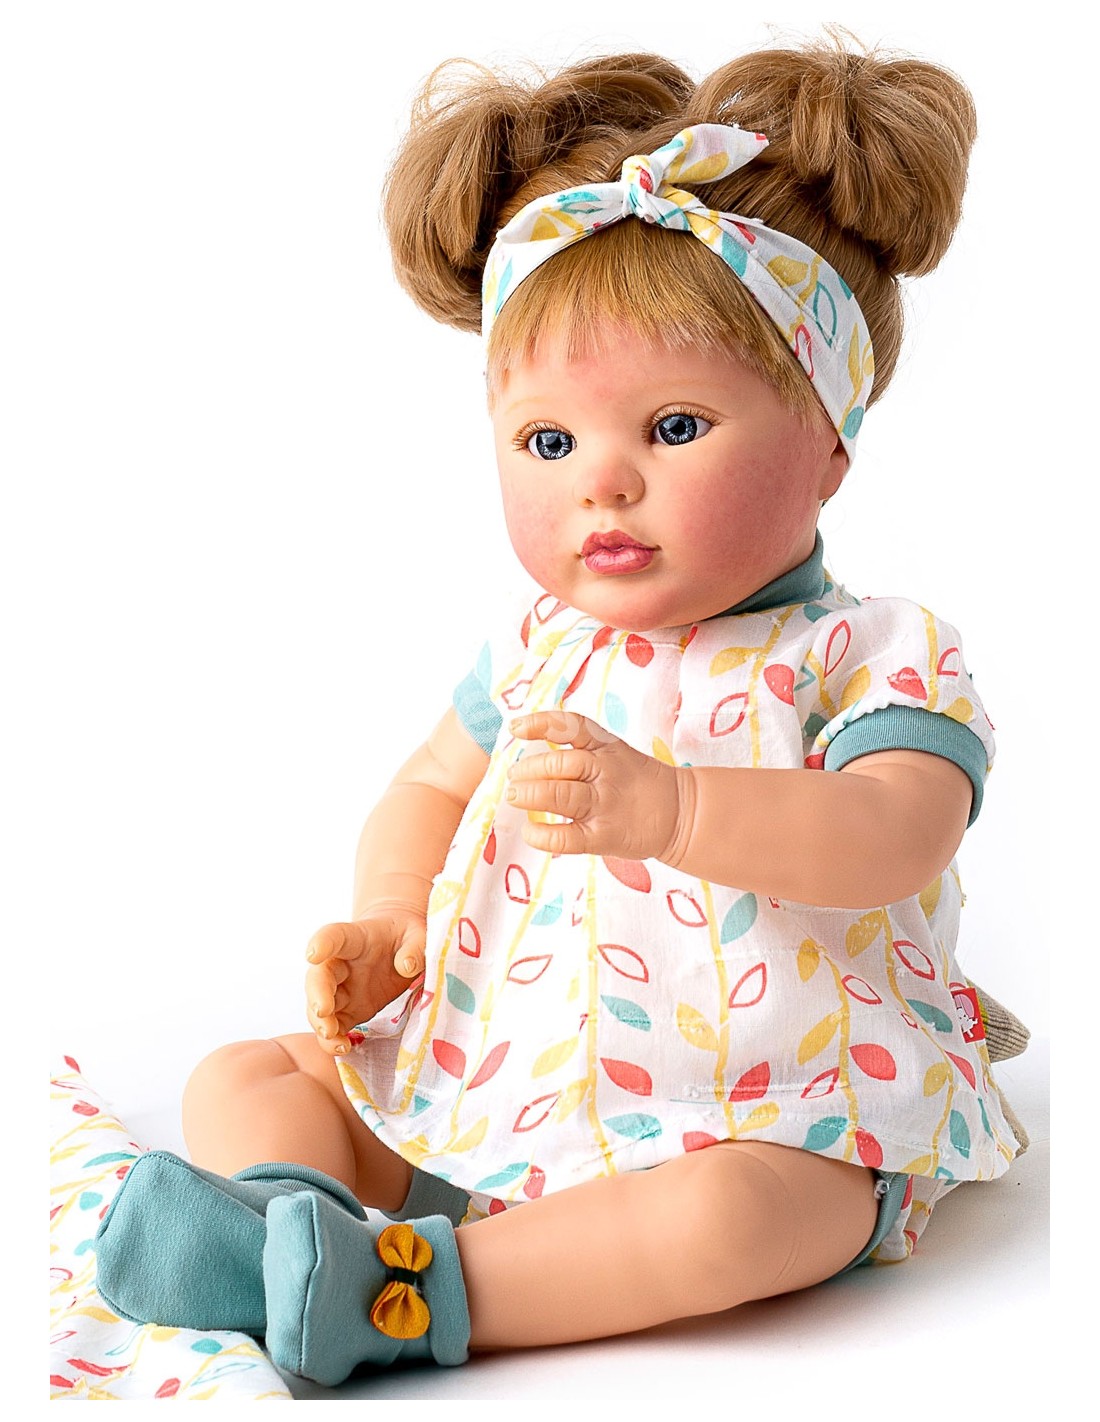 Bebe Reborn 48 CM - Diversal.es Tienda de muñecas, juguetes y disfraces